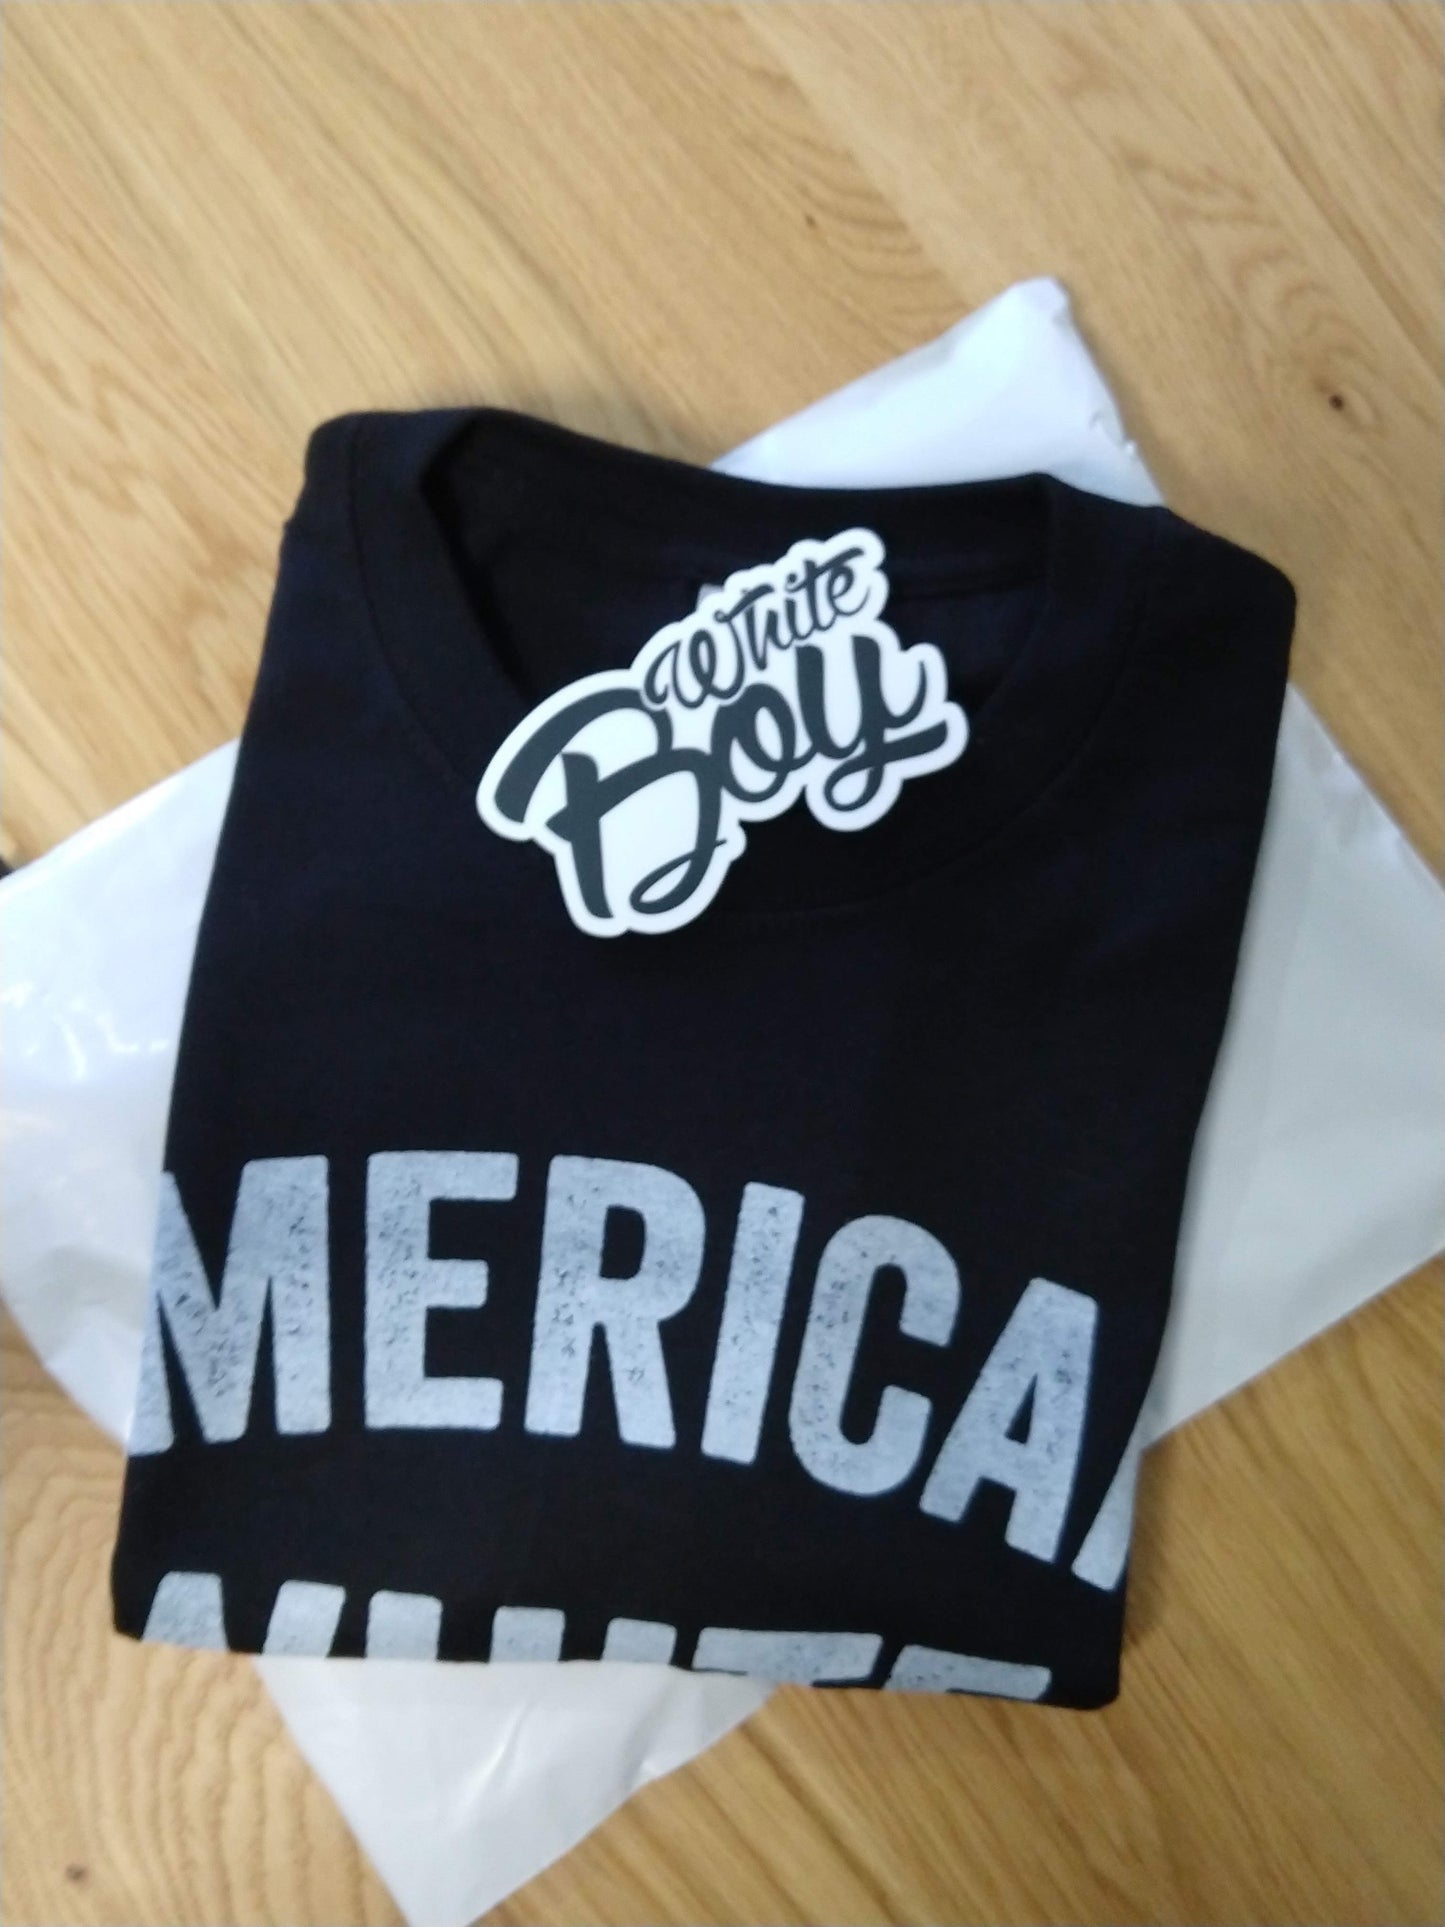 American White Boy T-Shirt